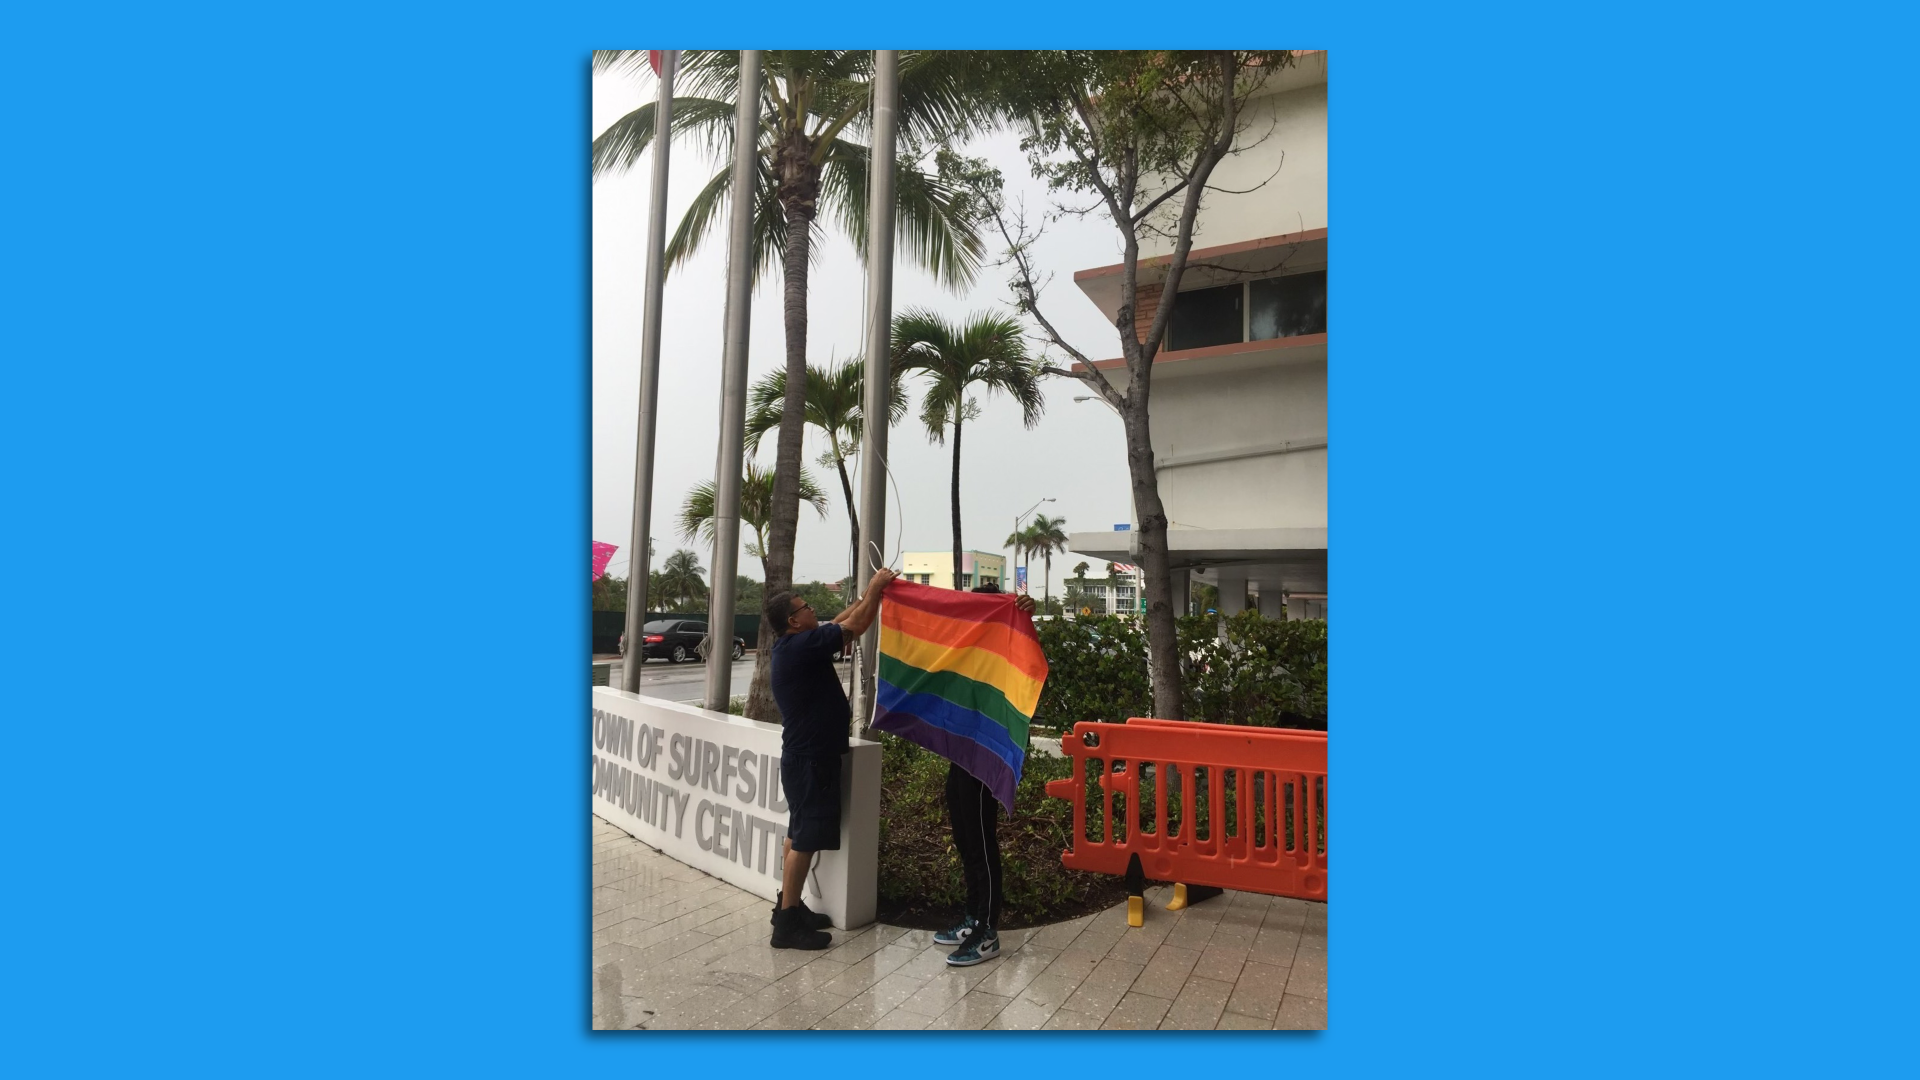 A pride flag is raised in Surfside.